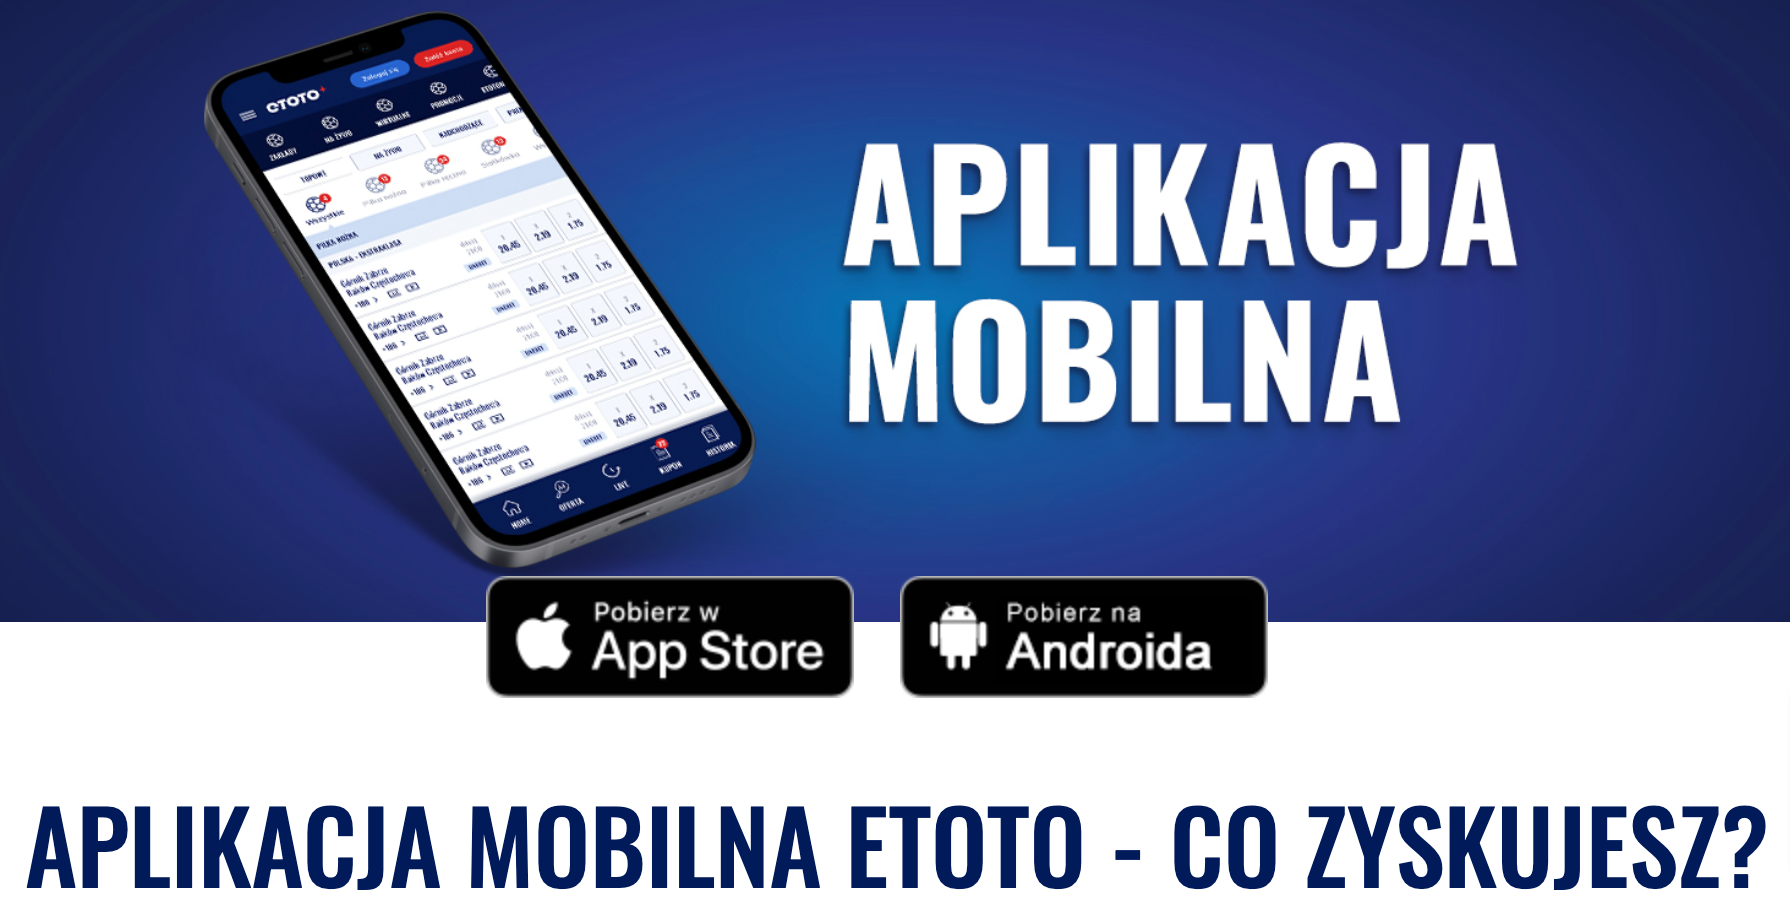 etoto aplikacja mobilna